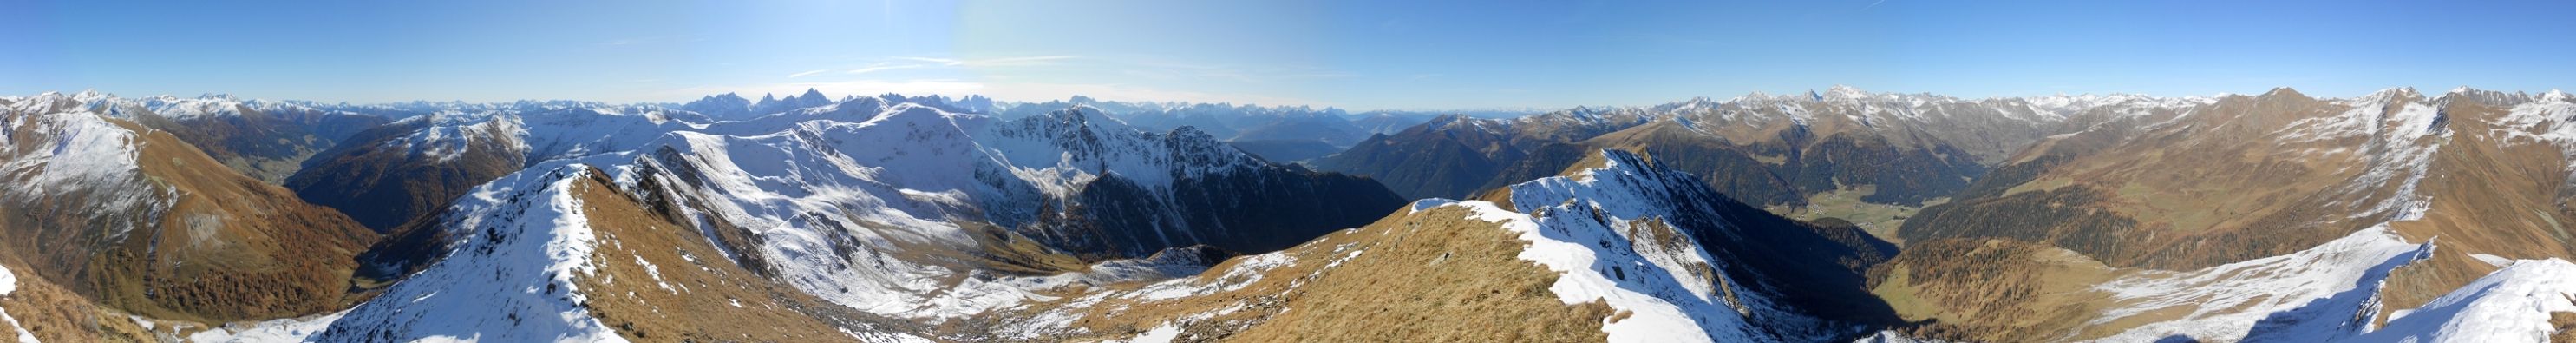 panorama-kaerlsspitze